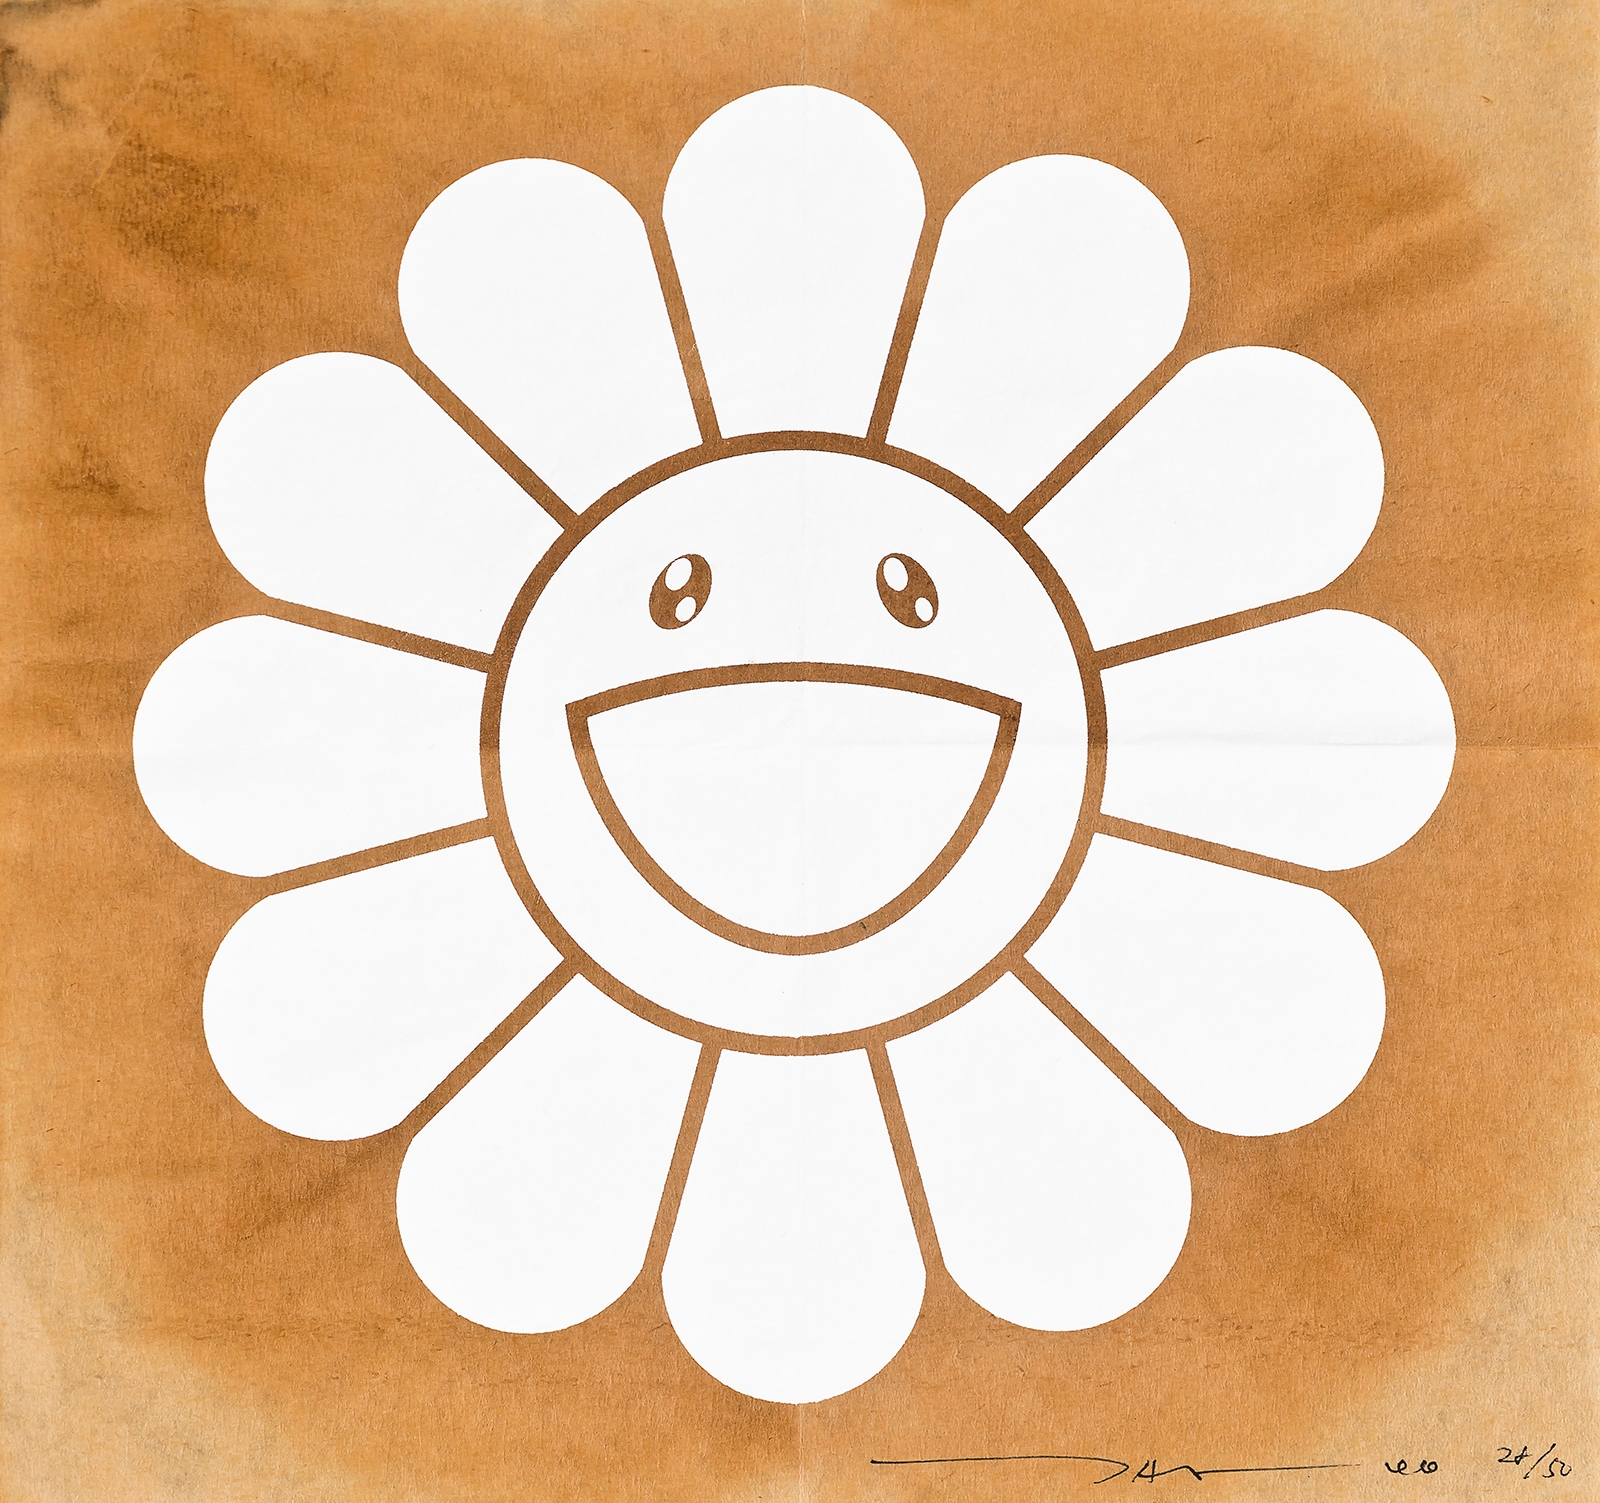 Takashi Murakami Sunflower Sticker